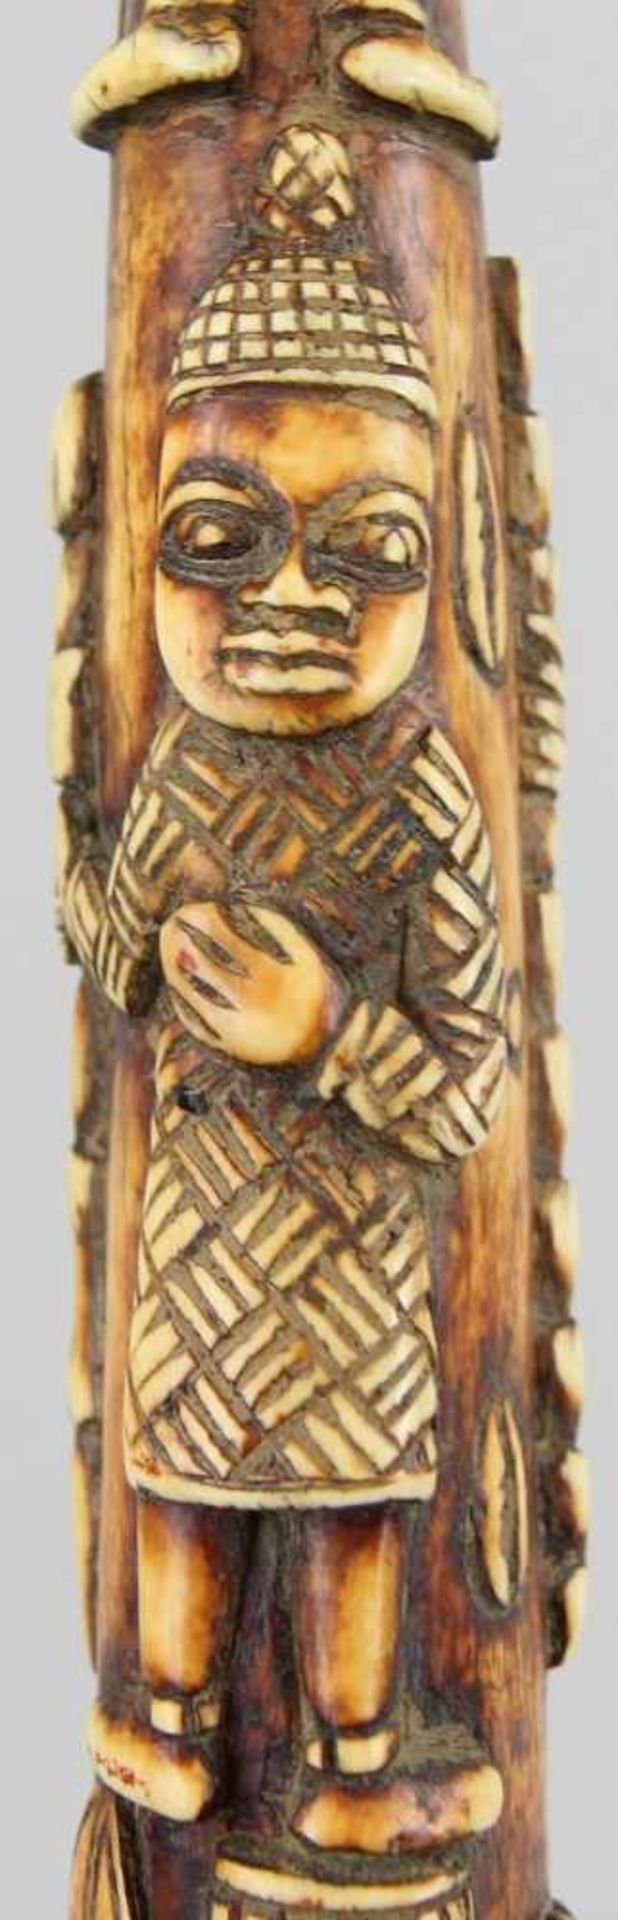 Sehr große Benin - ElfenbeinflöteGanzer Elfenbeinzahn geschnitzt und rot-braun gefärbt, umlaufend - Image 5 of 6